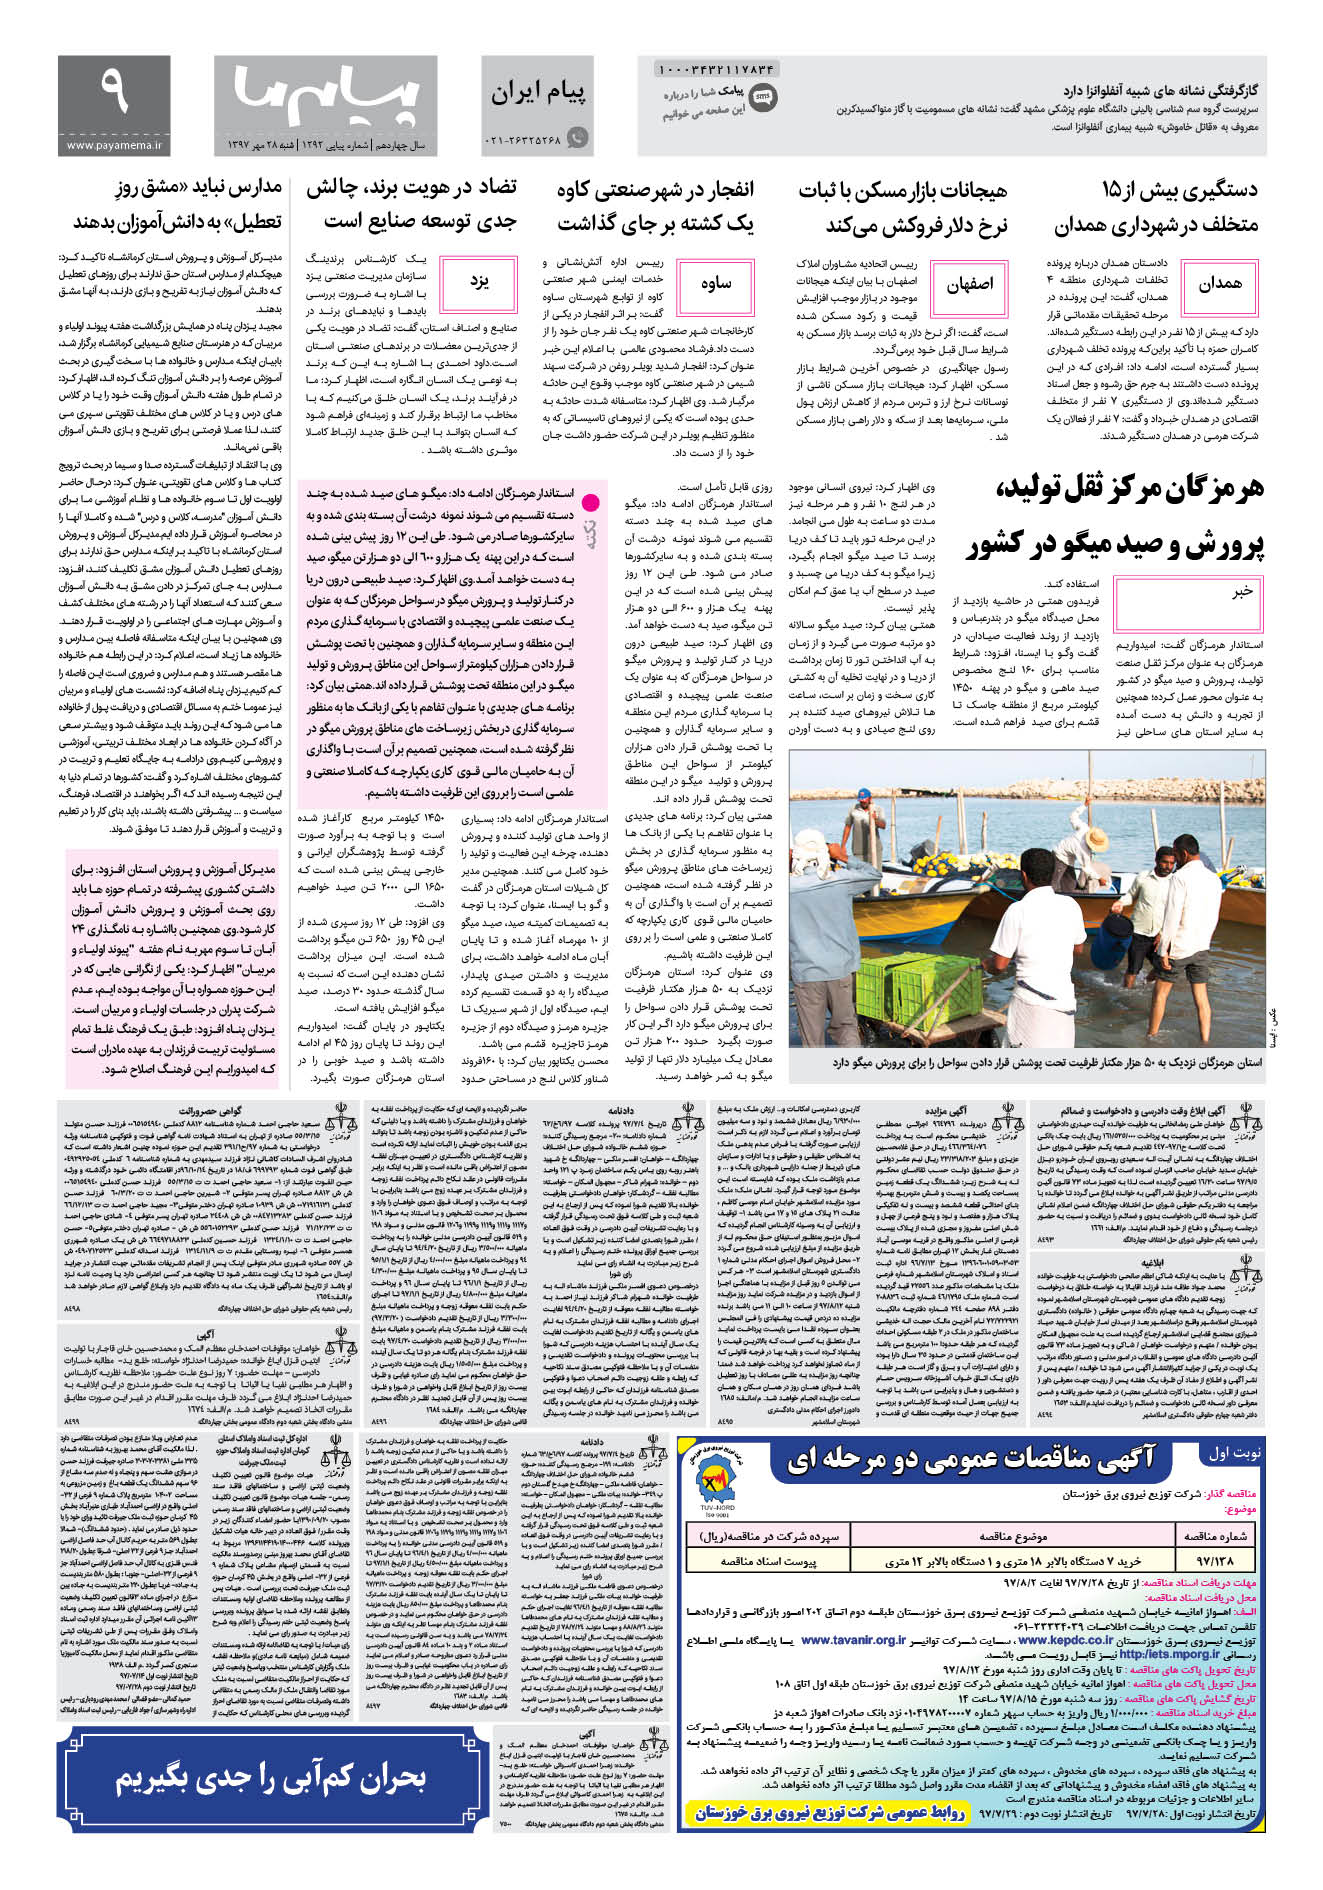 صفحه پیام ایران شماره 1292 روزنامه پیام ما